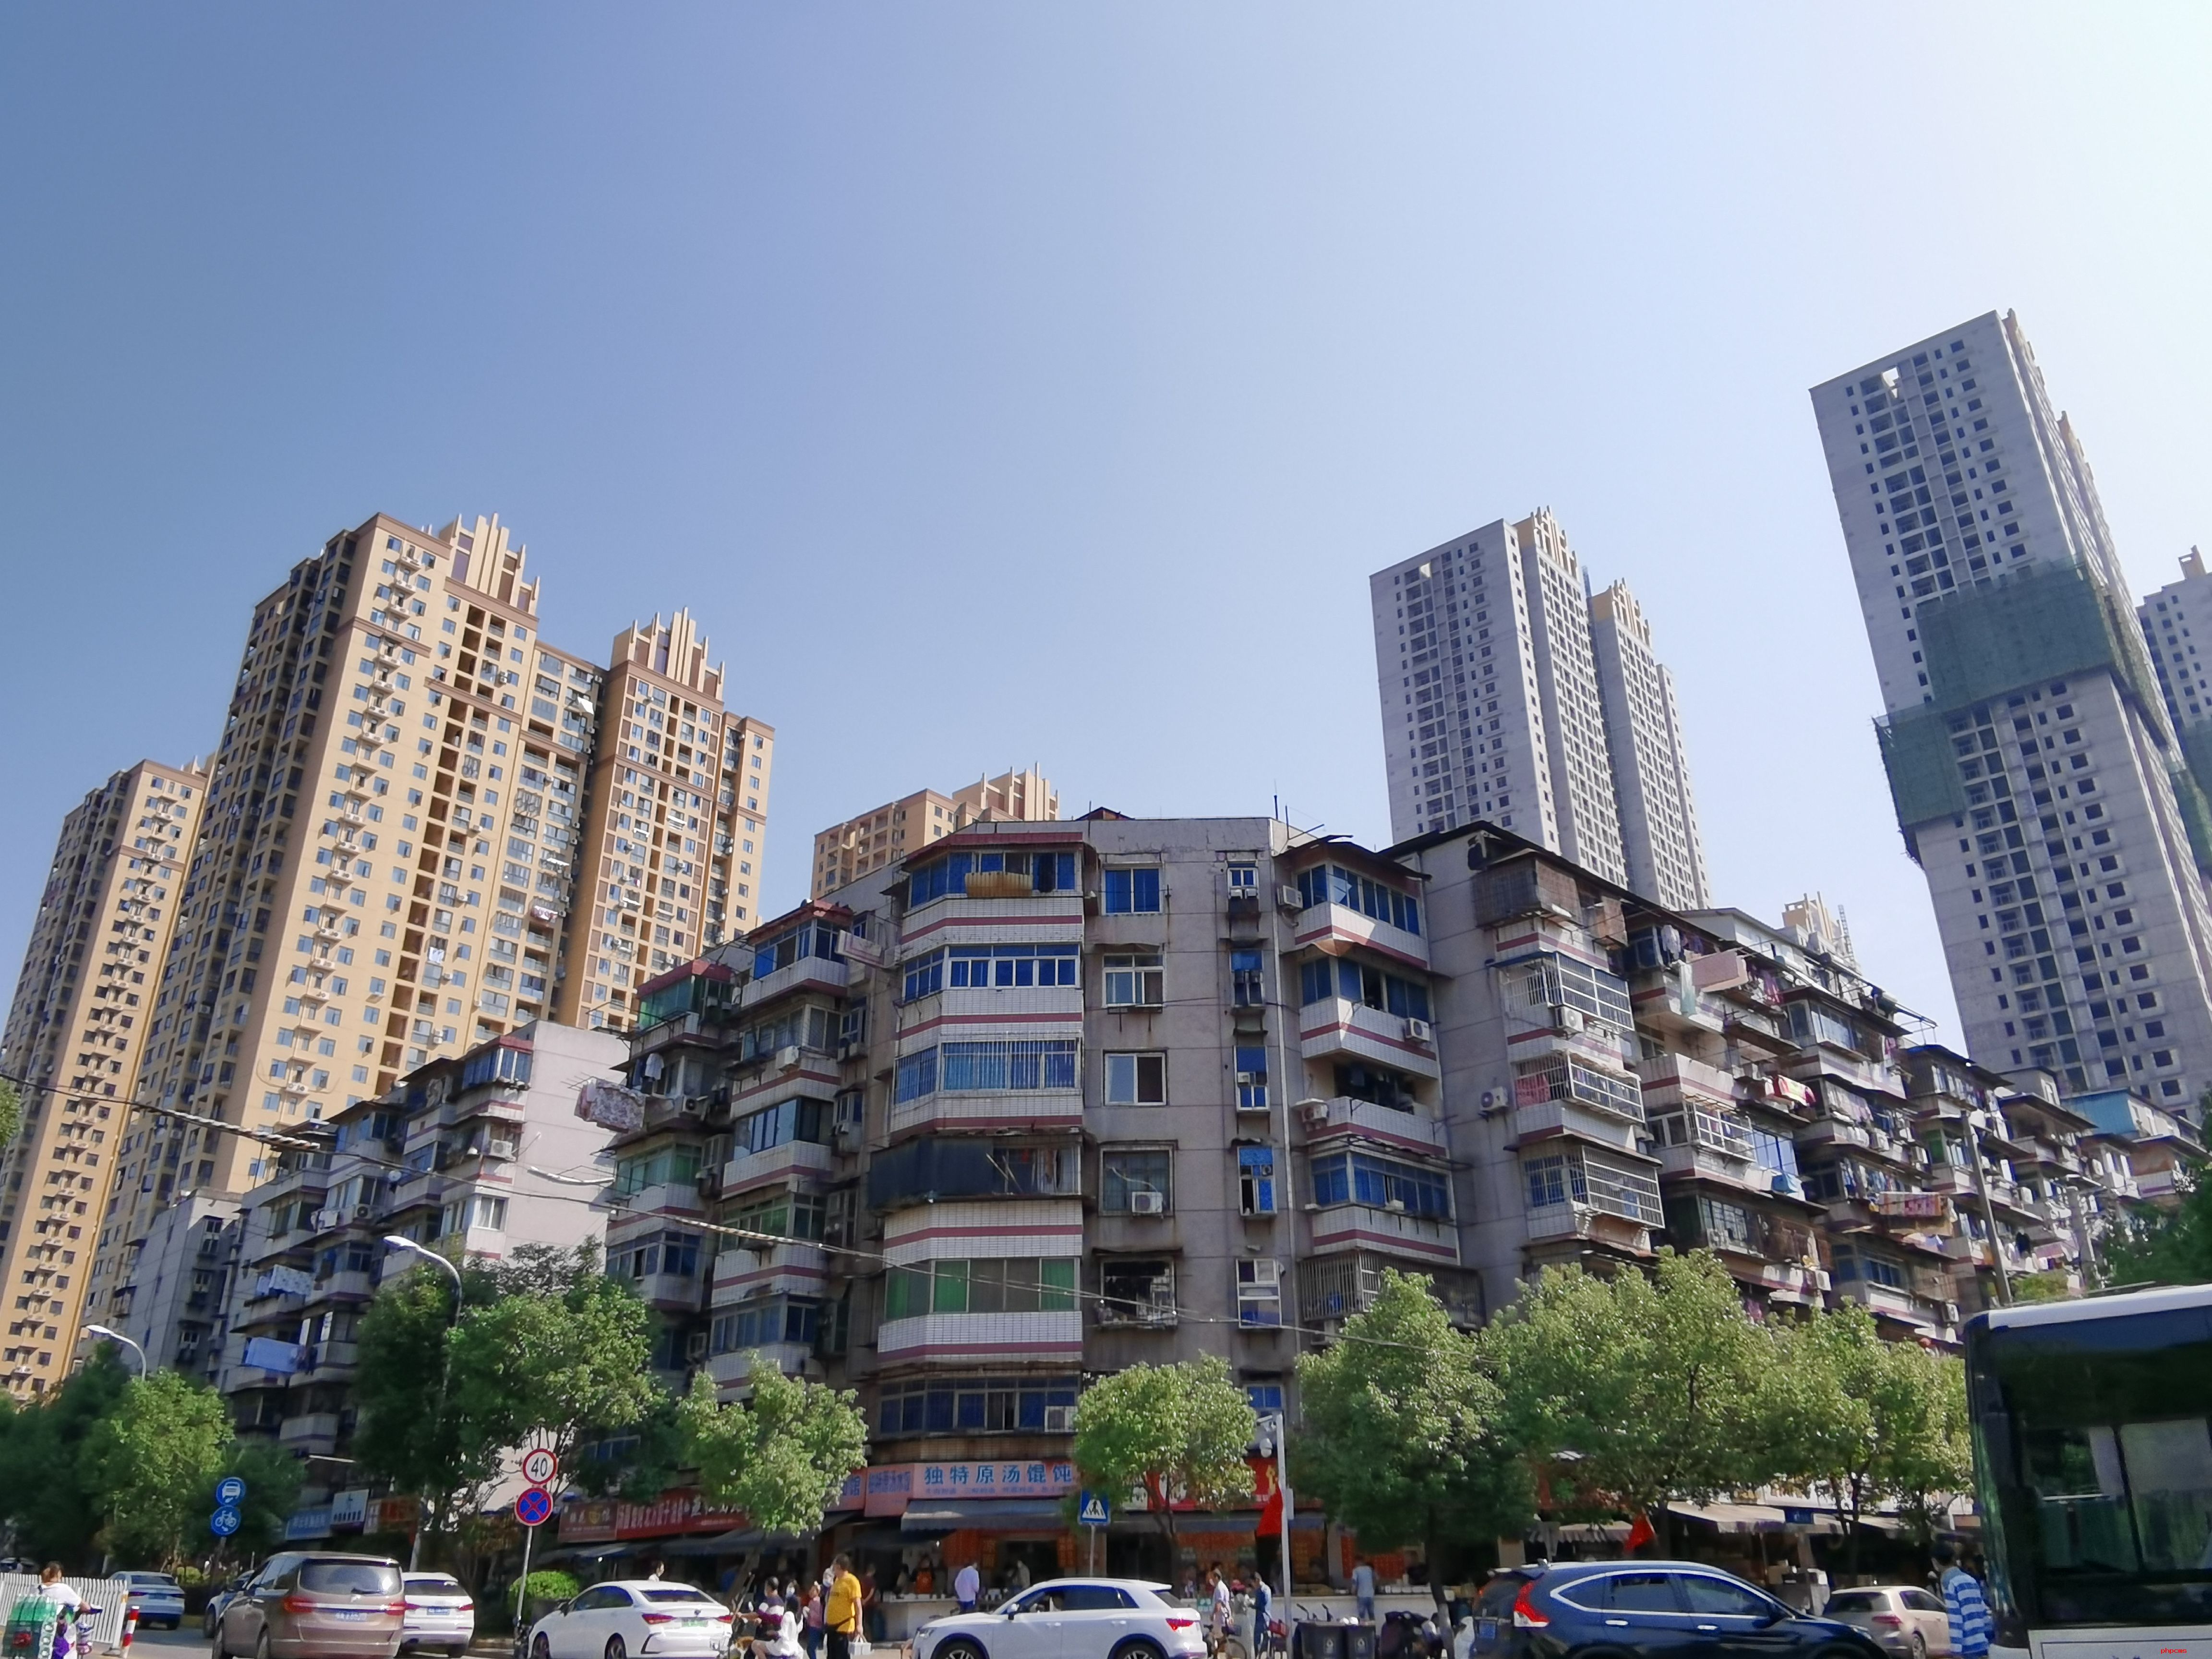 2022年中国房地产市场将呈现先抑后稳态势